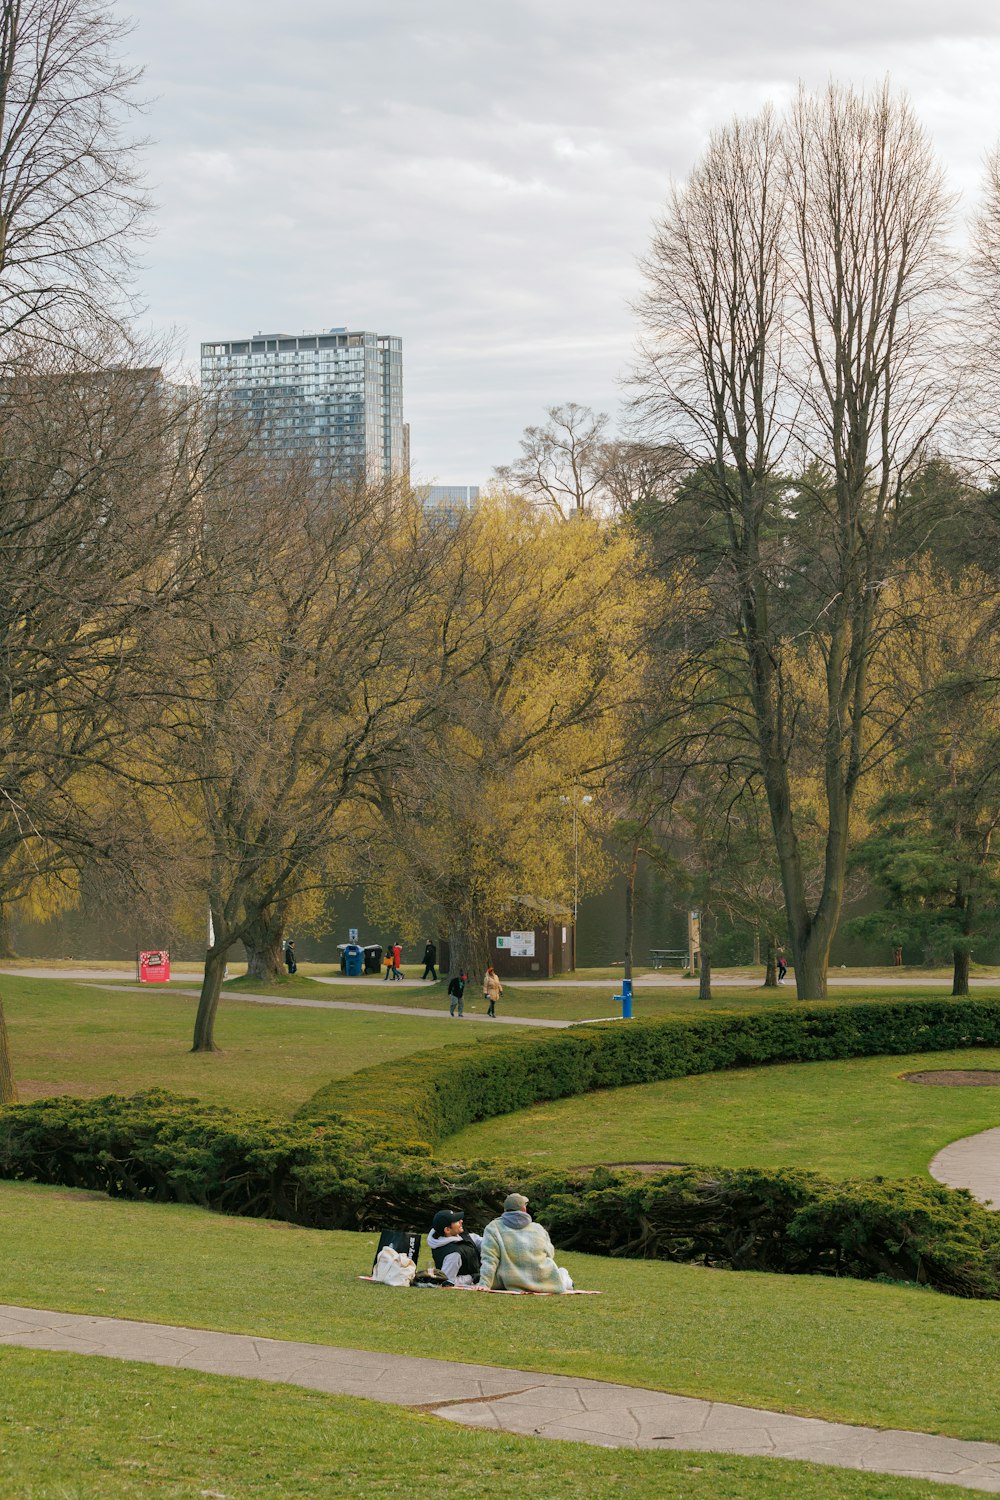 무성한 녹색 공원 위에 앉아있는 한 무리의 사람들